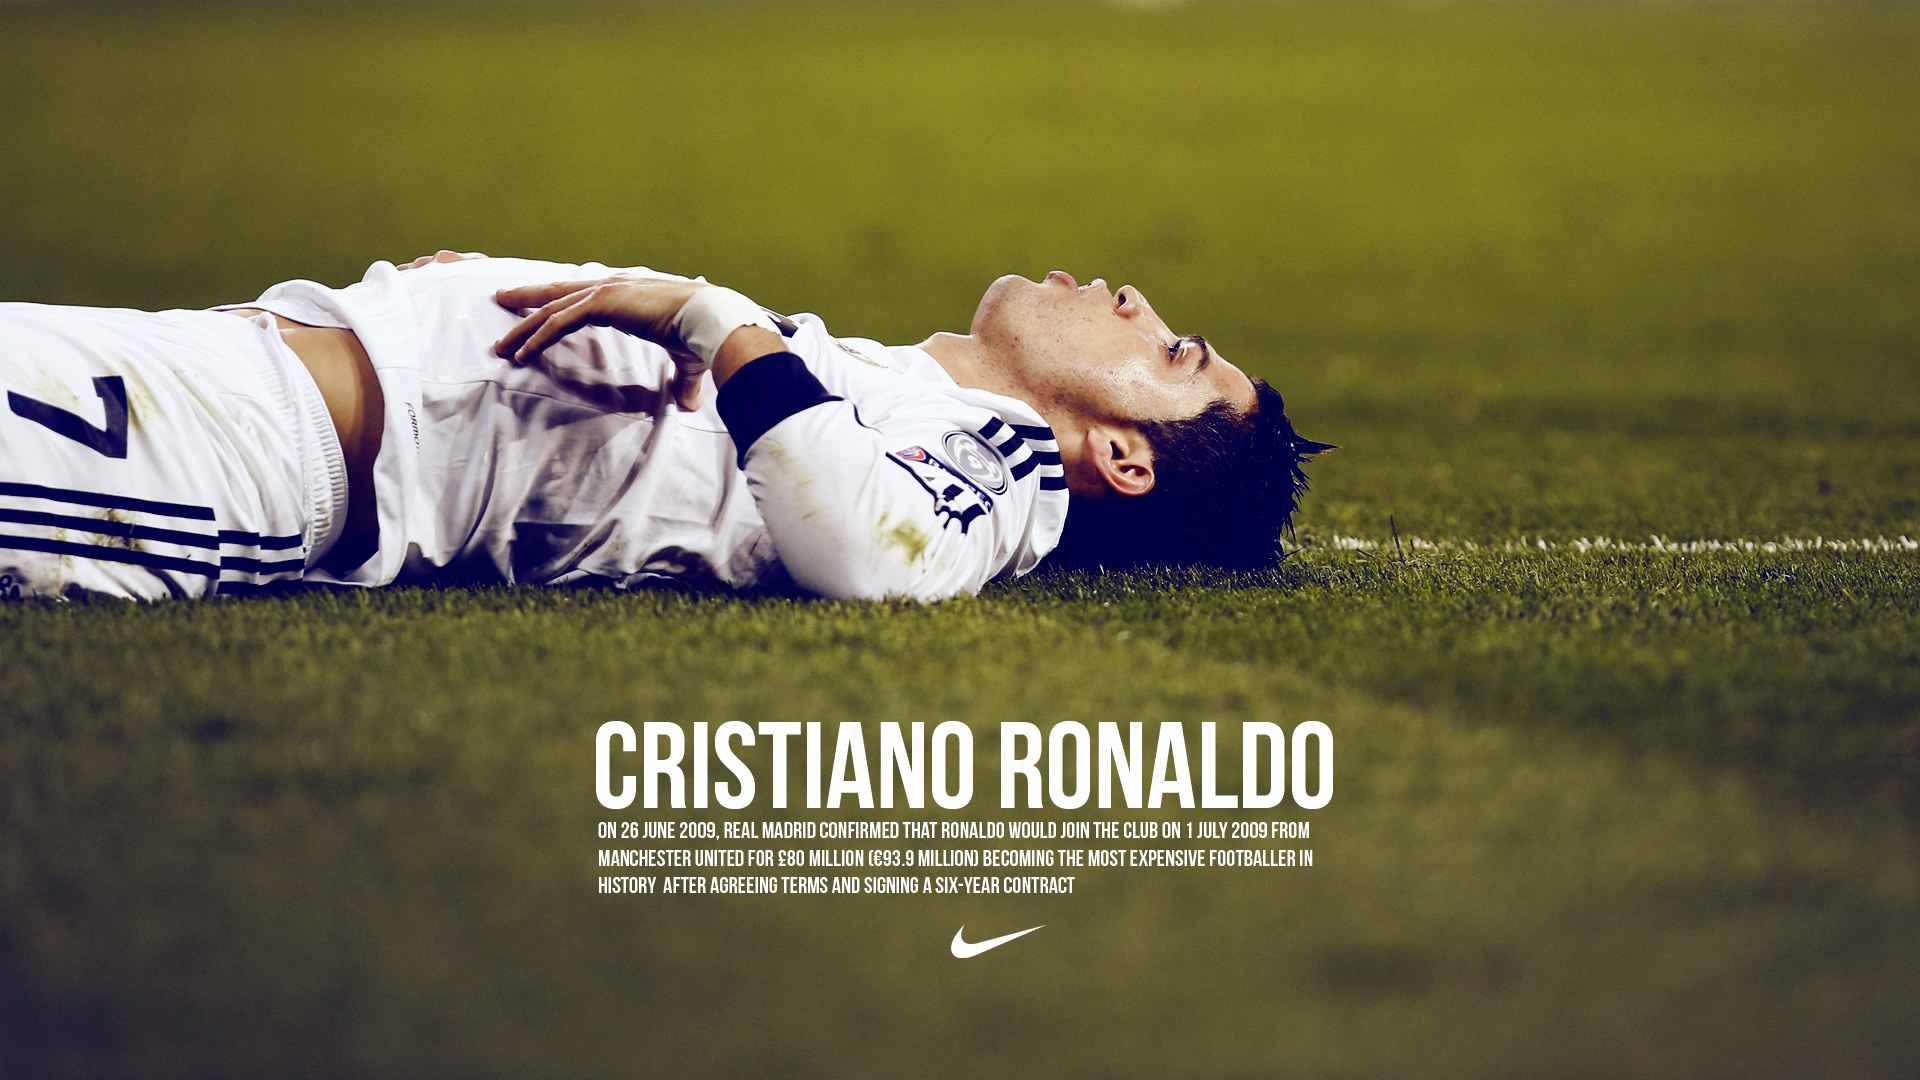 Cristiano Ronaldo Nike wallpaper (4) - Cristiano Ronaldo ...